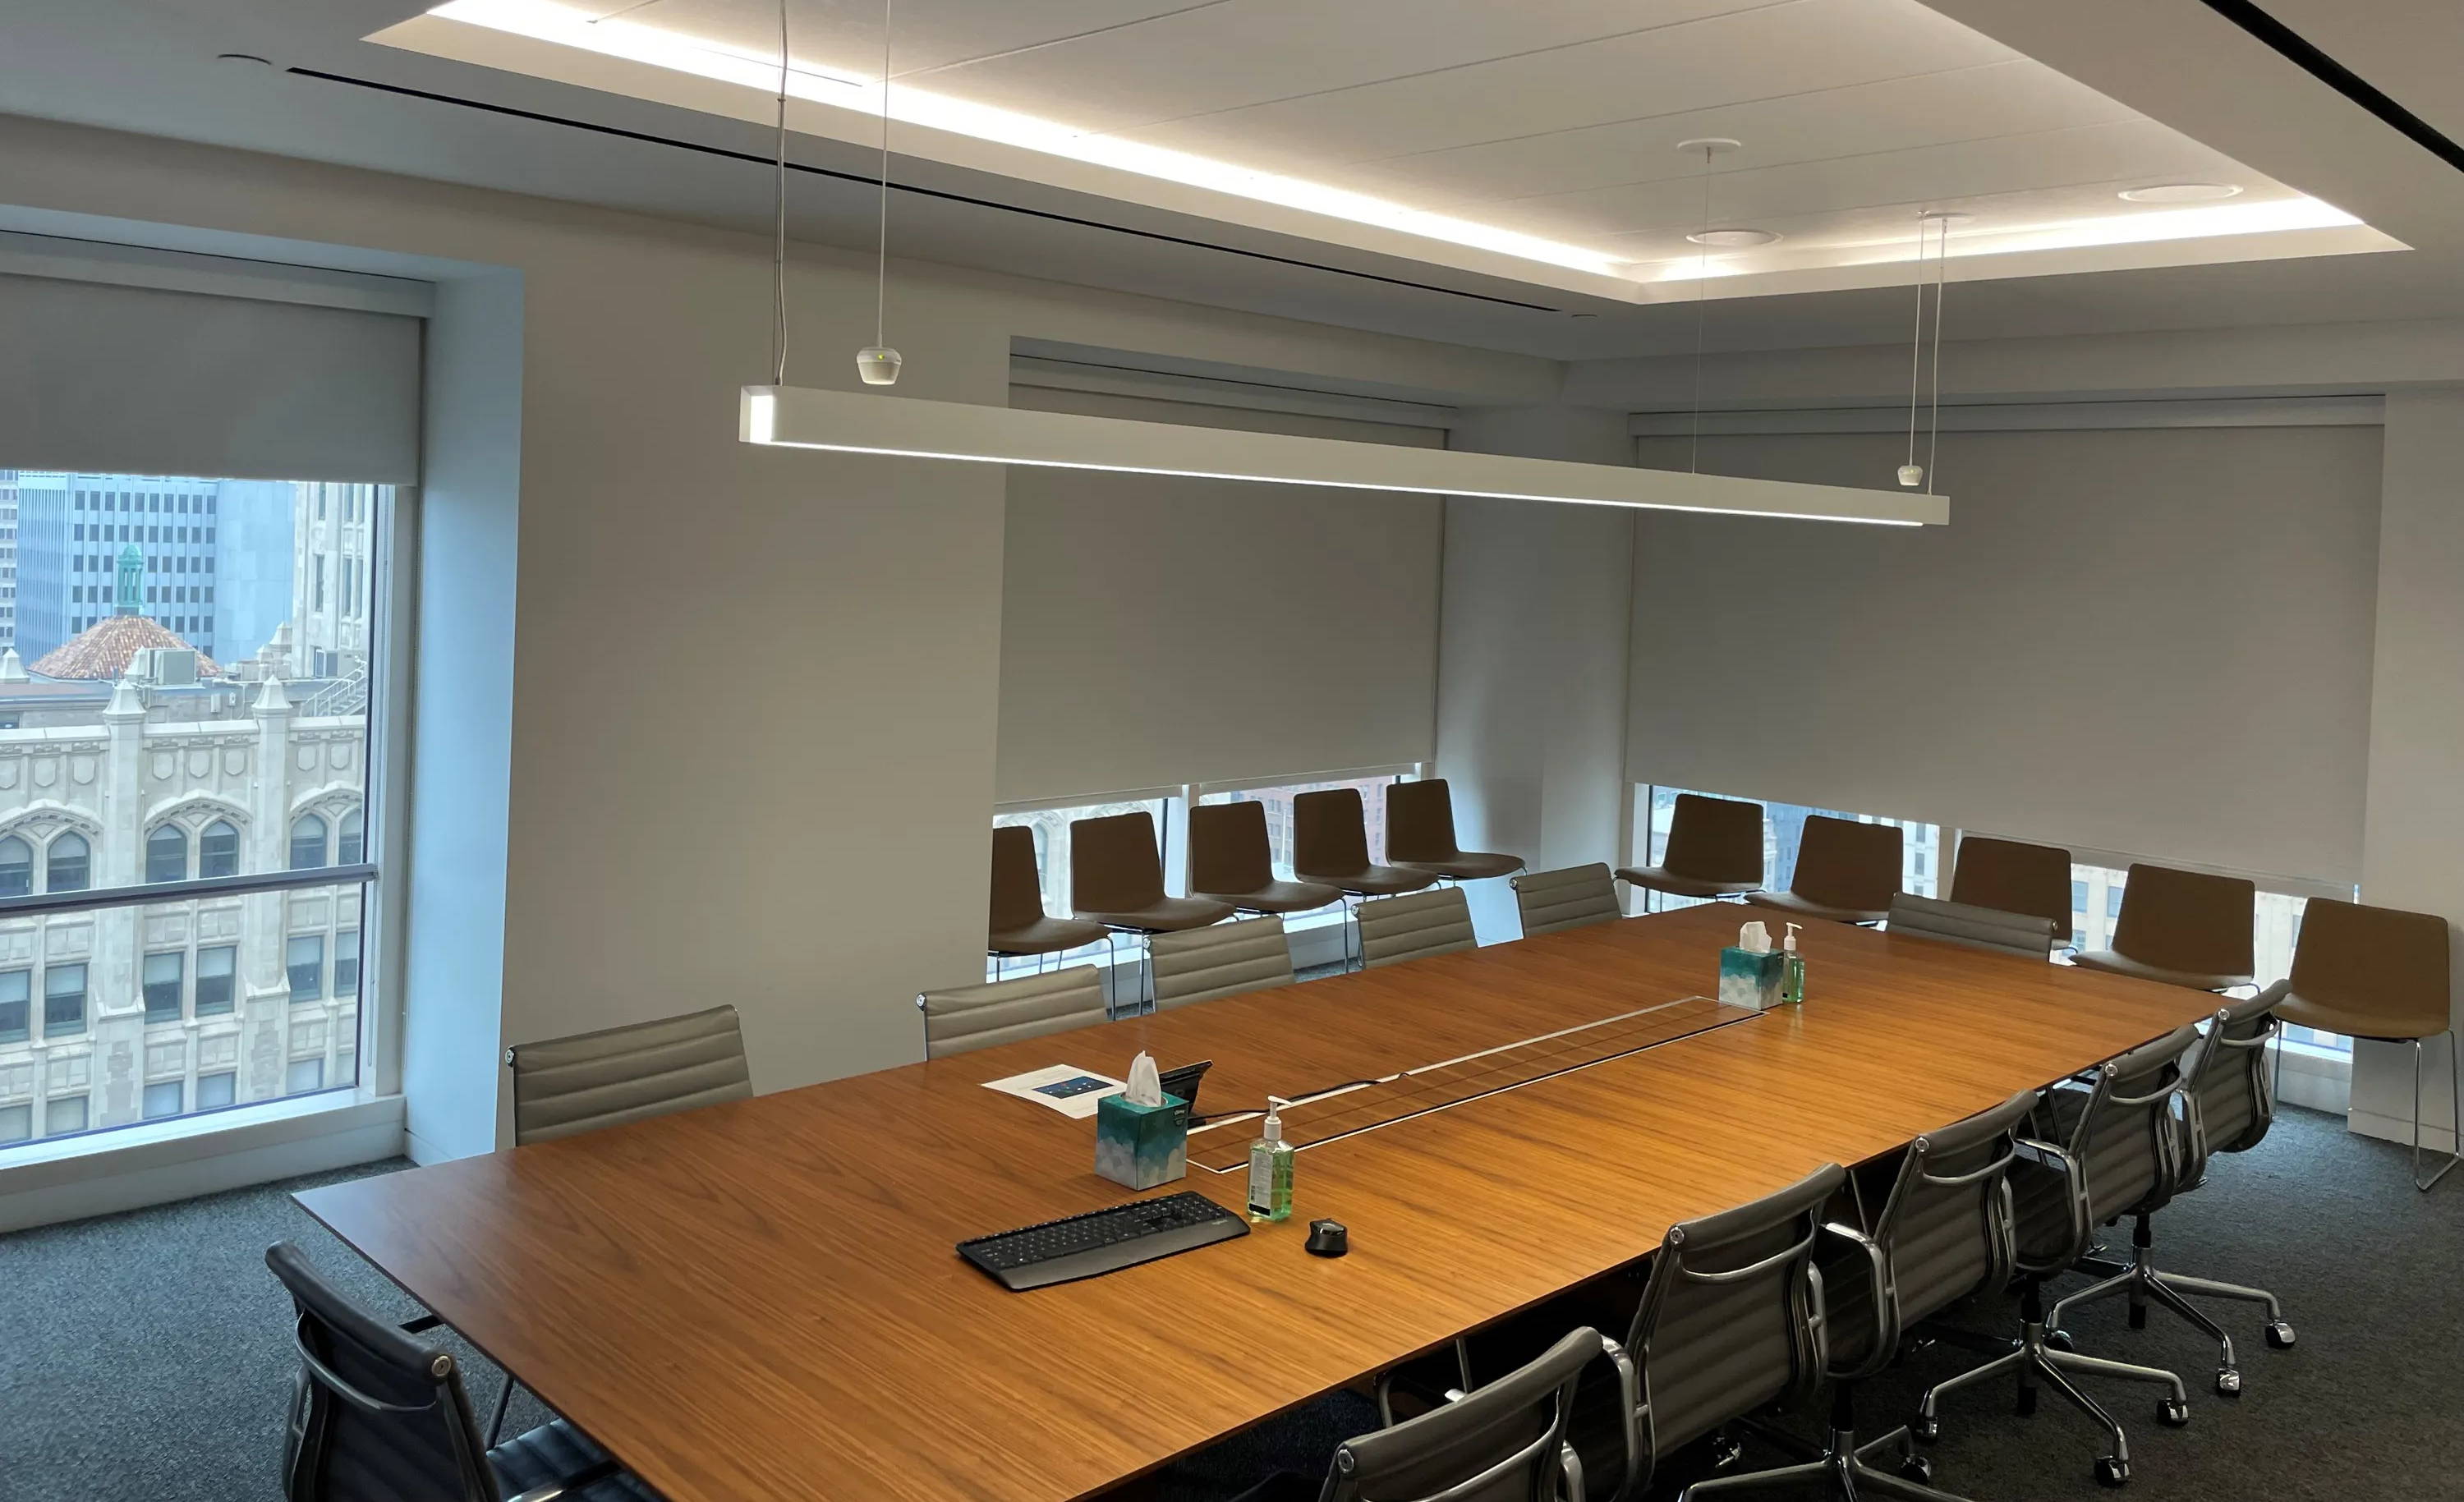 Conference Room AV Design Install Services